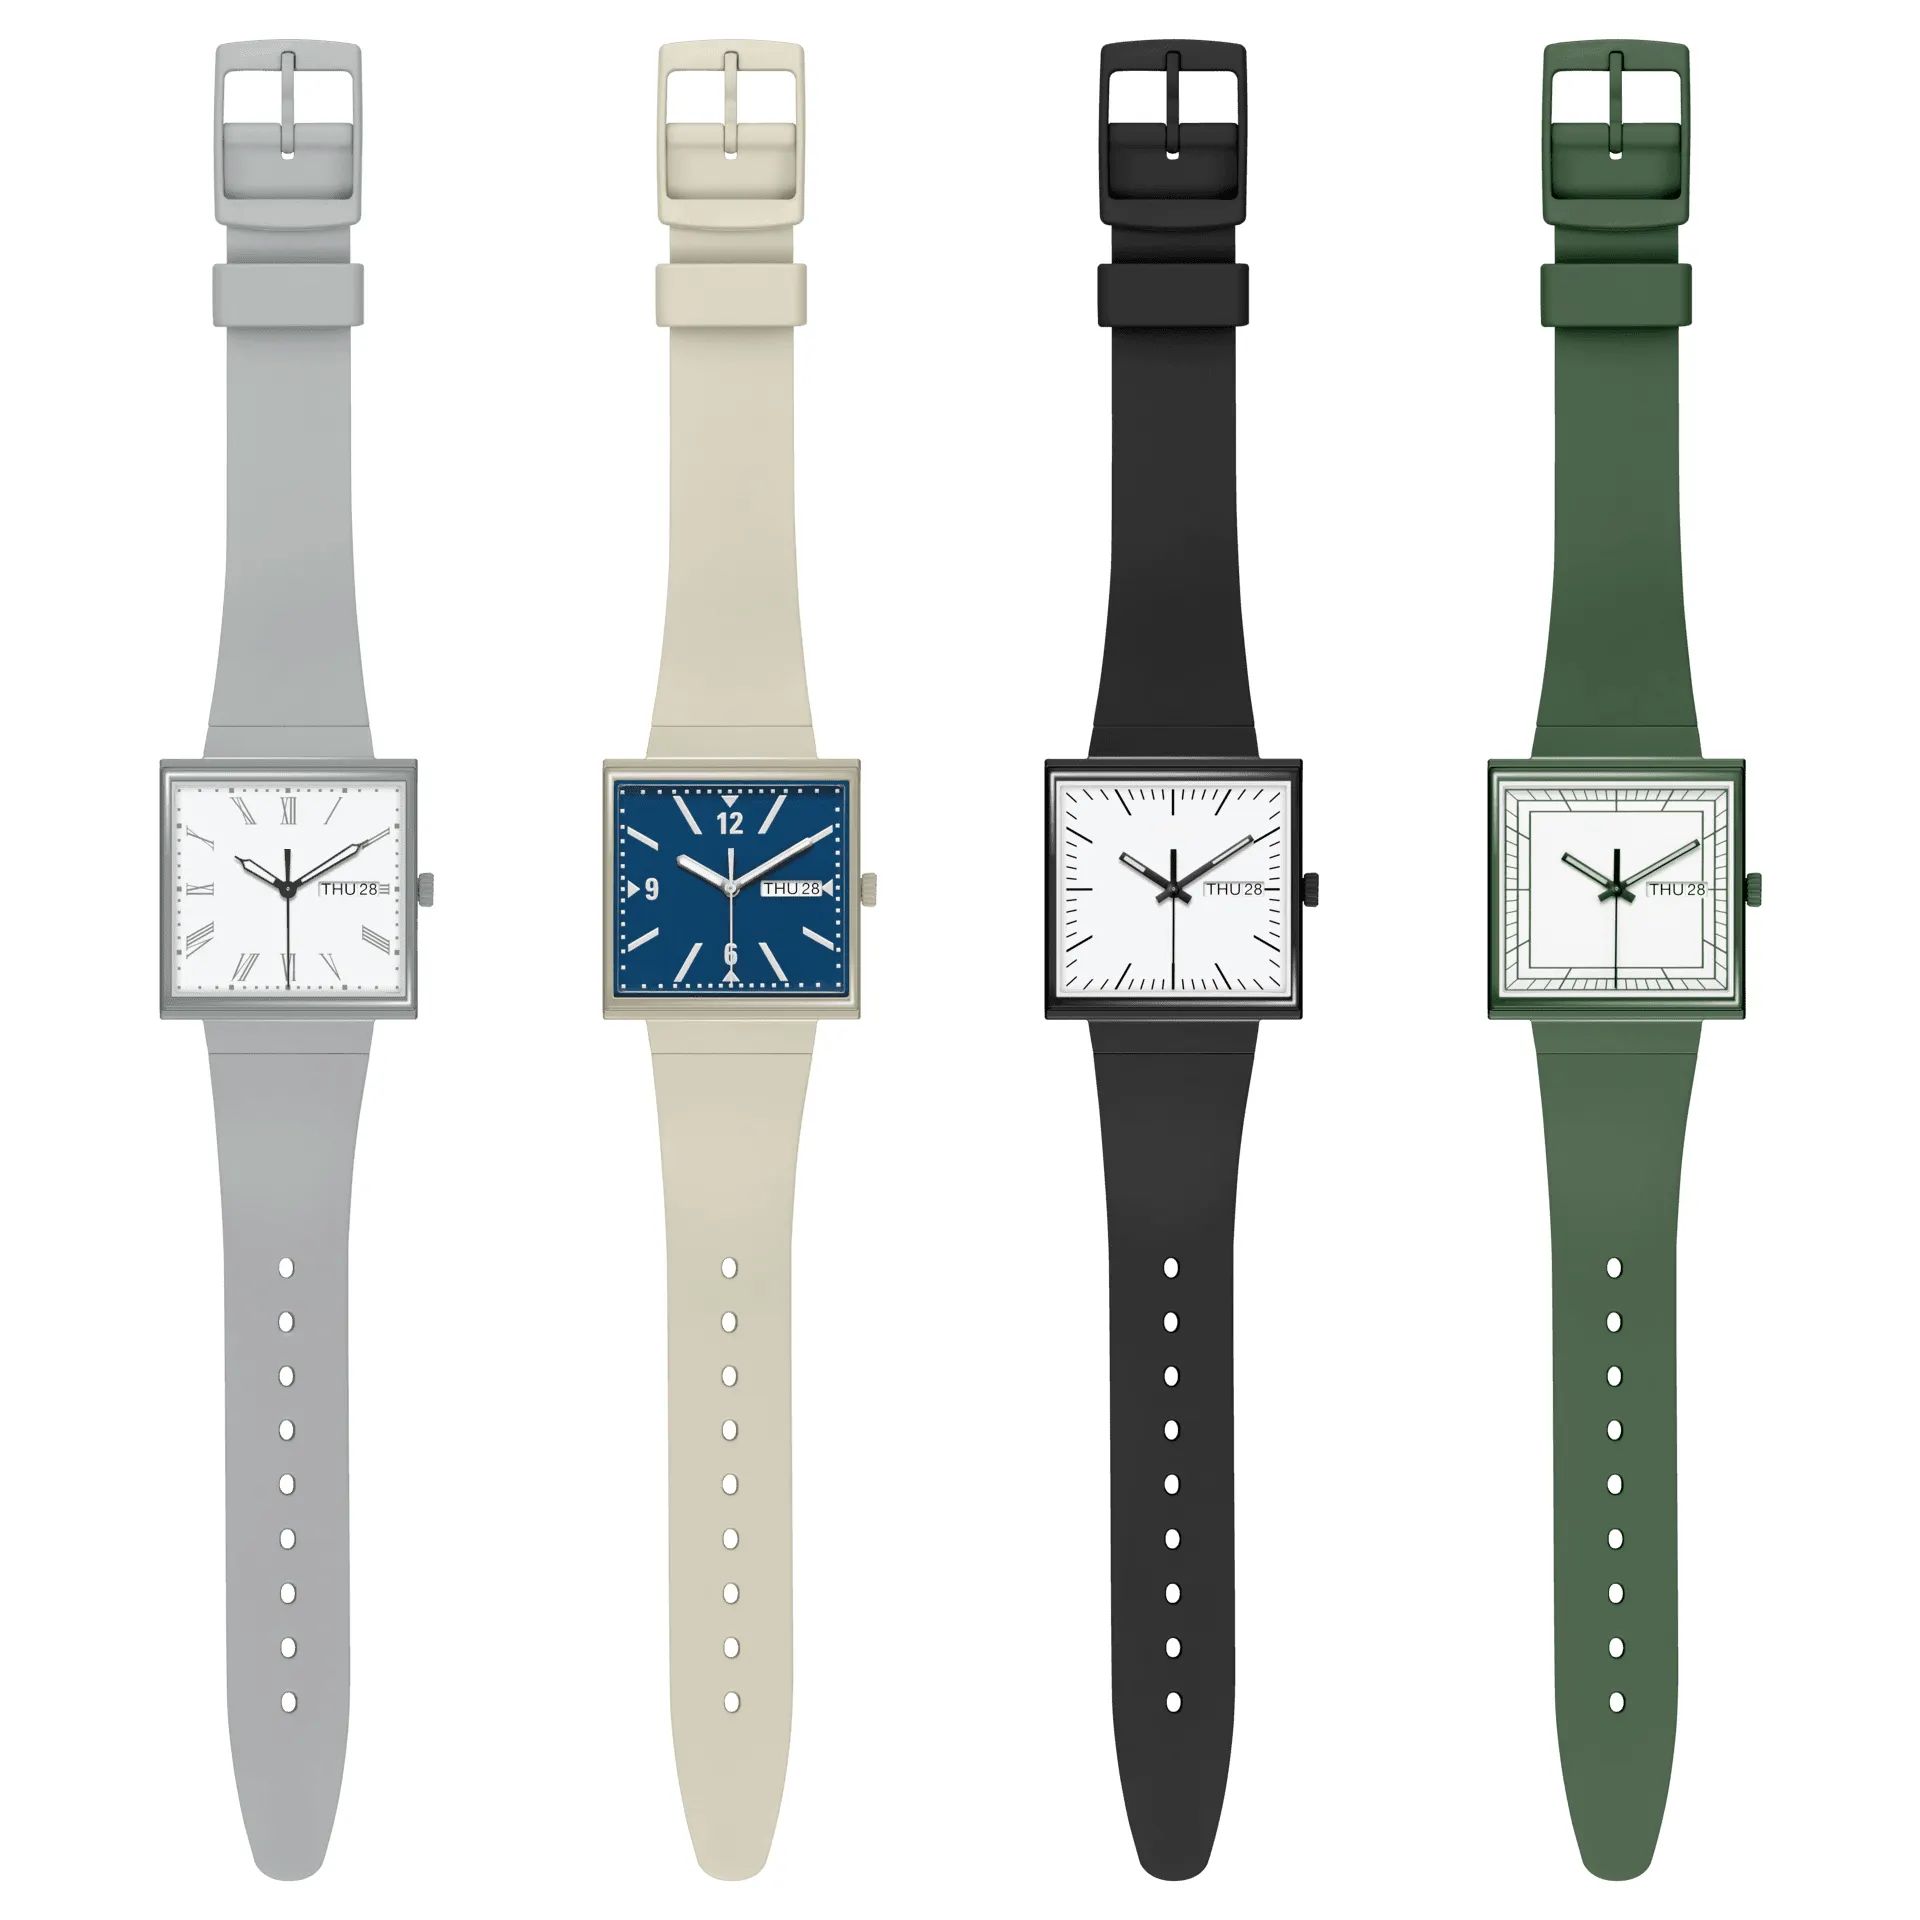 Custom Design nuovo oggetto orologio quadrato Unisex Silicone Band uomo donne orologi al quarzo in plastica moda orologio